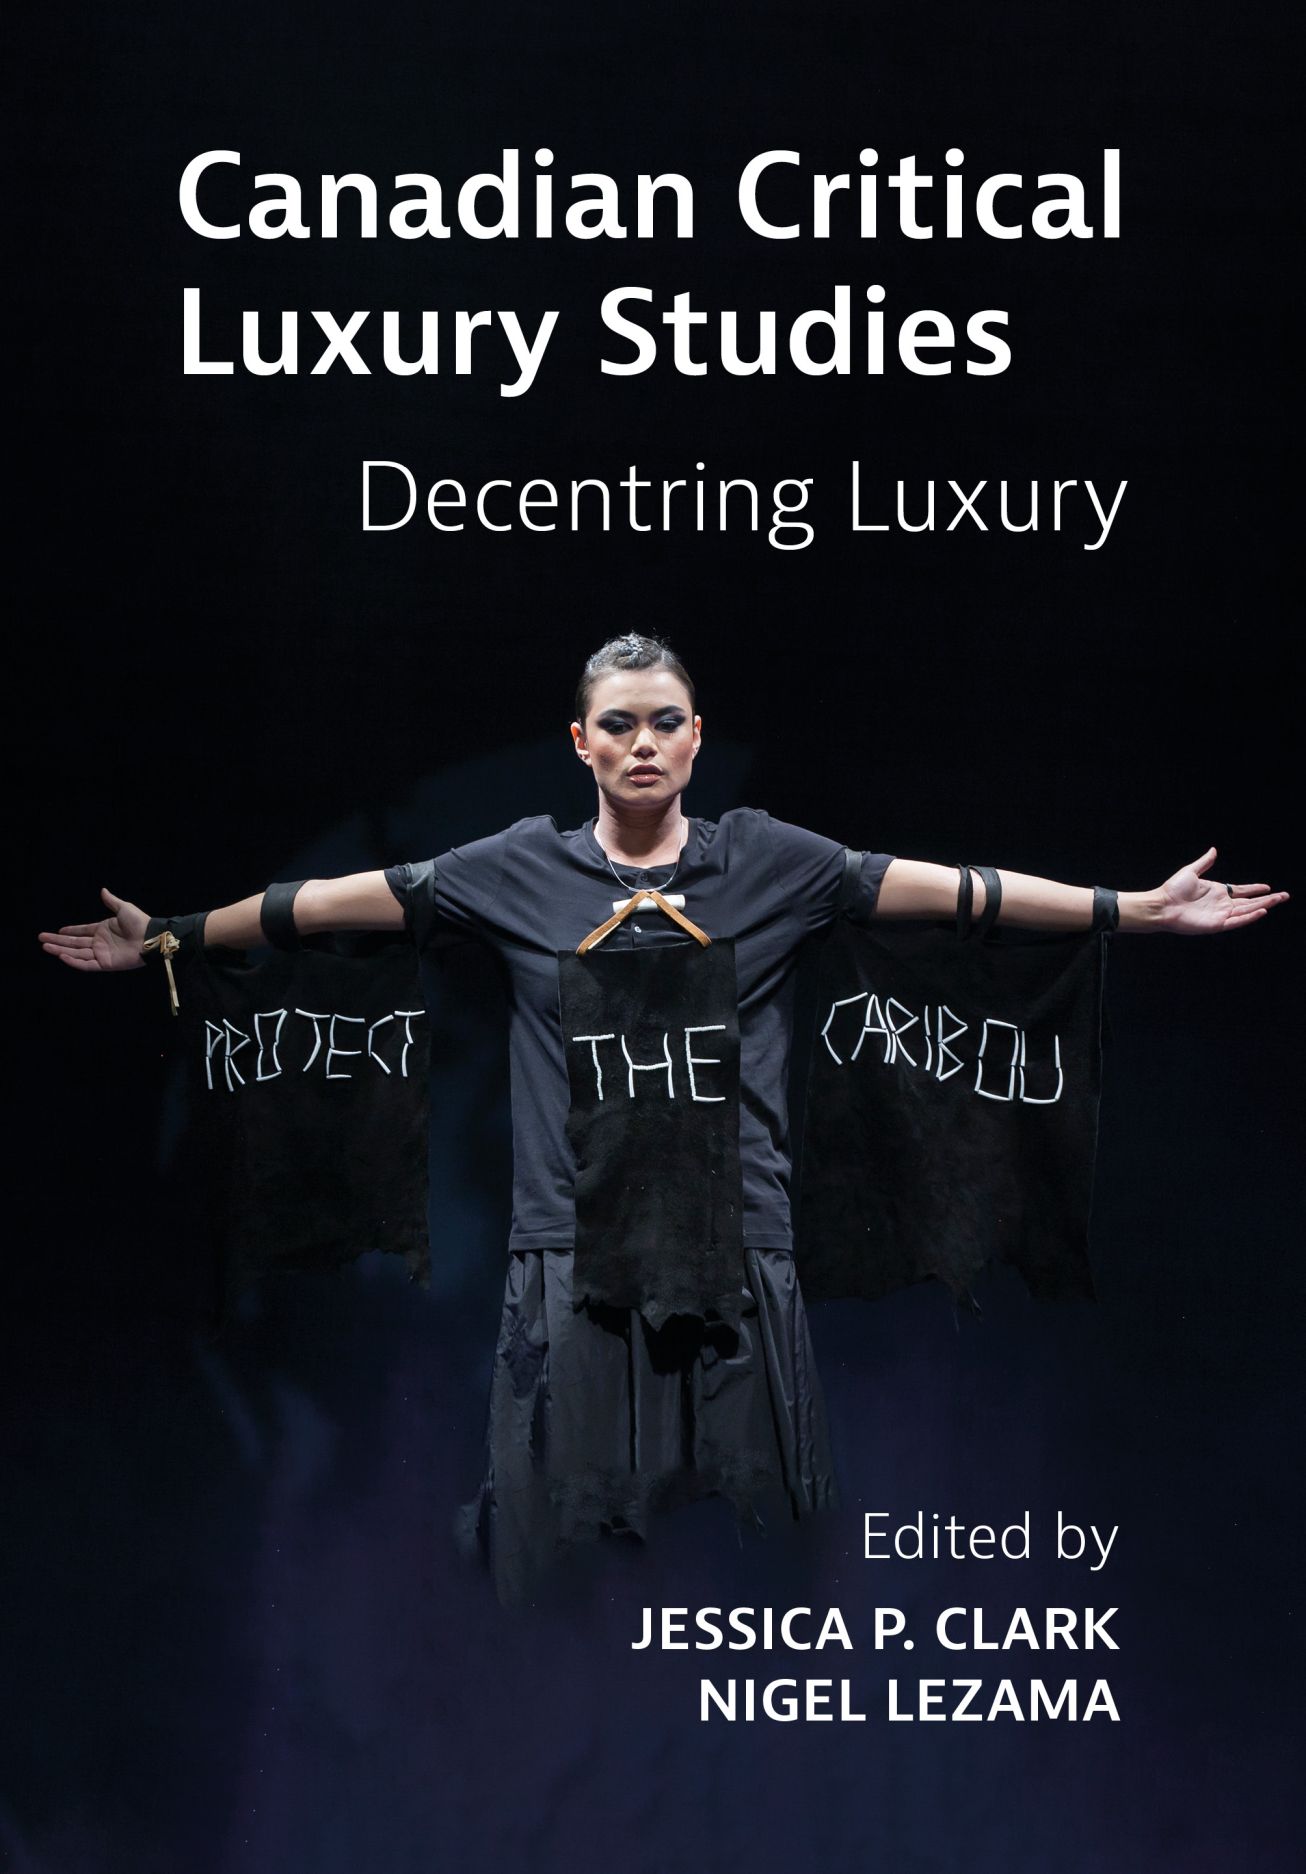 Libri Clark, Lezama - Canadian Critical Luxury Studies Hb NUOVO SIGILLATO, EDIZIONE DEL 29/04/2022 SUBITO DISPONIBILE